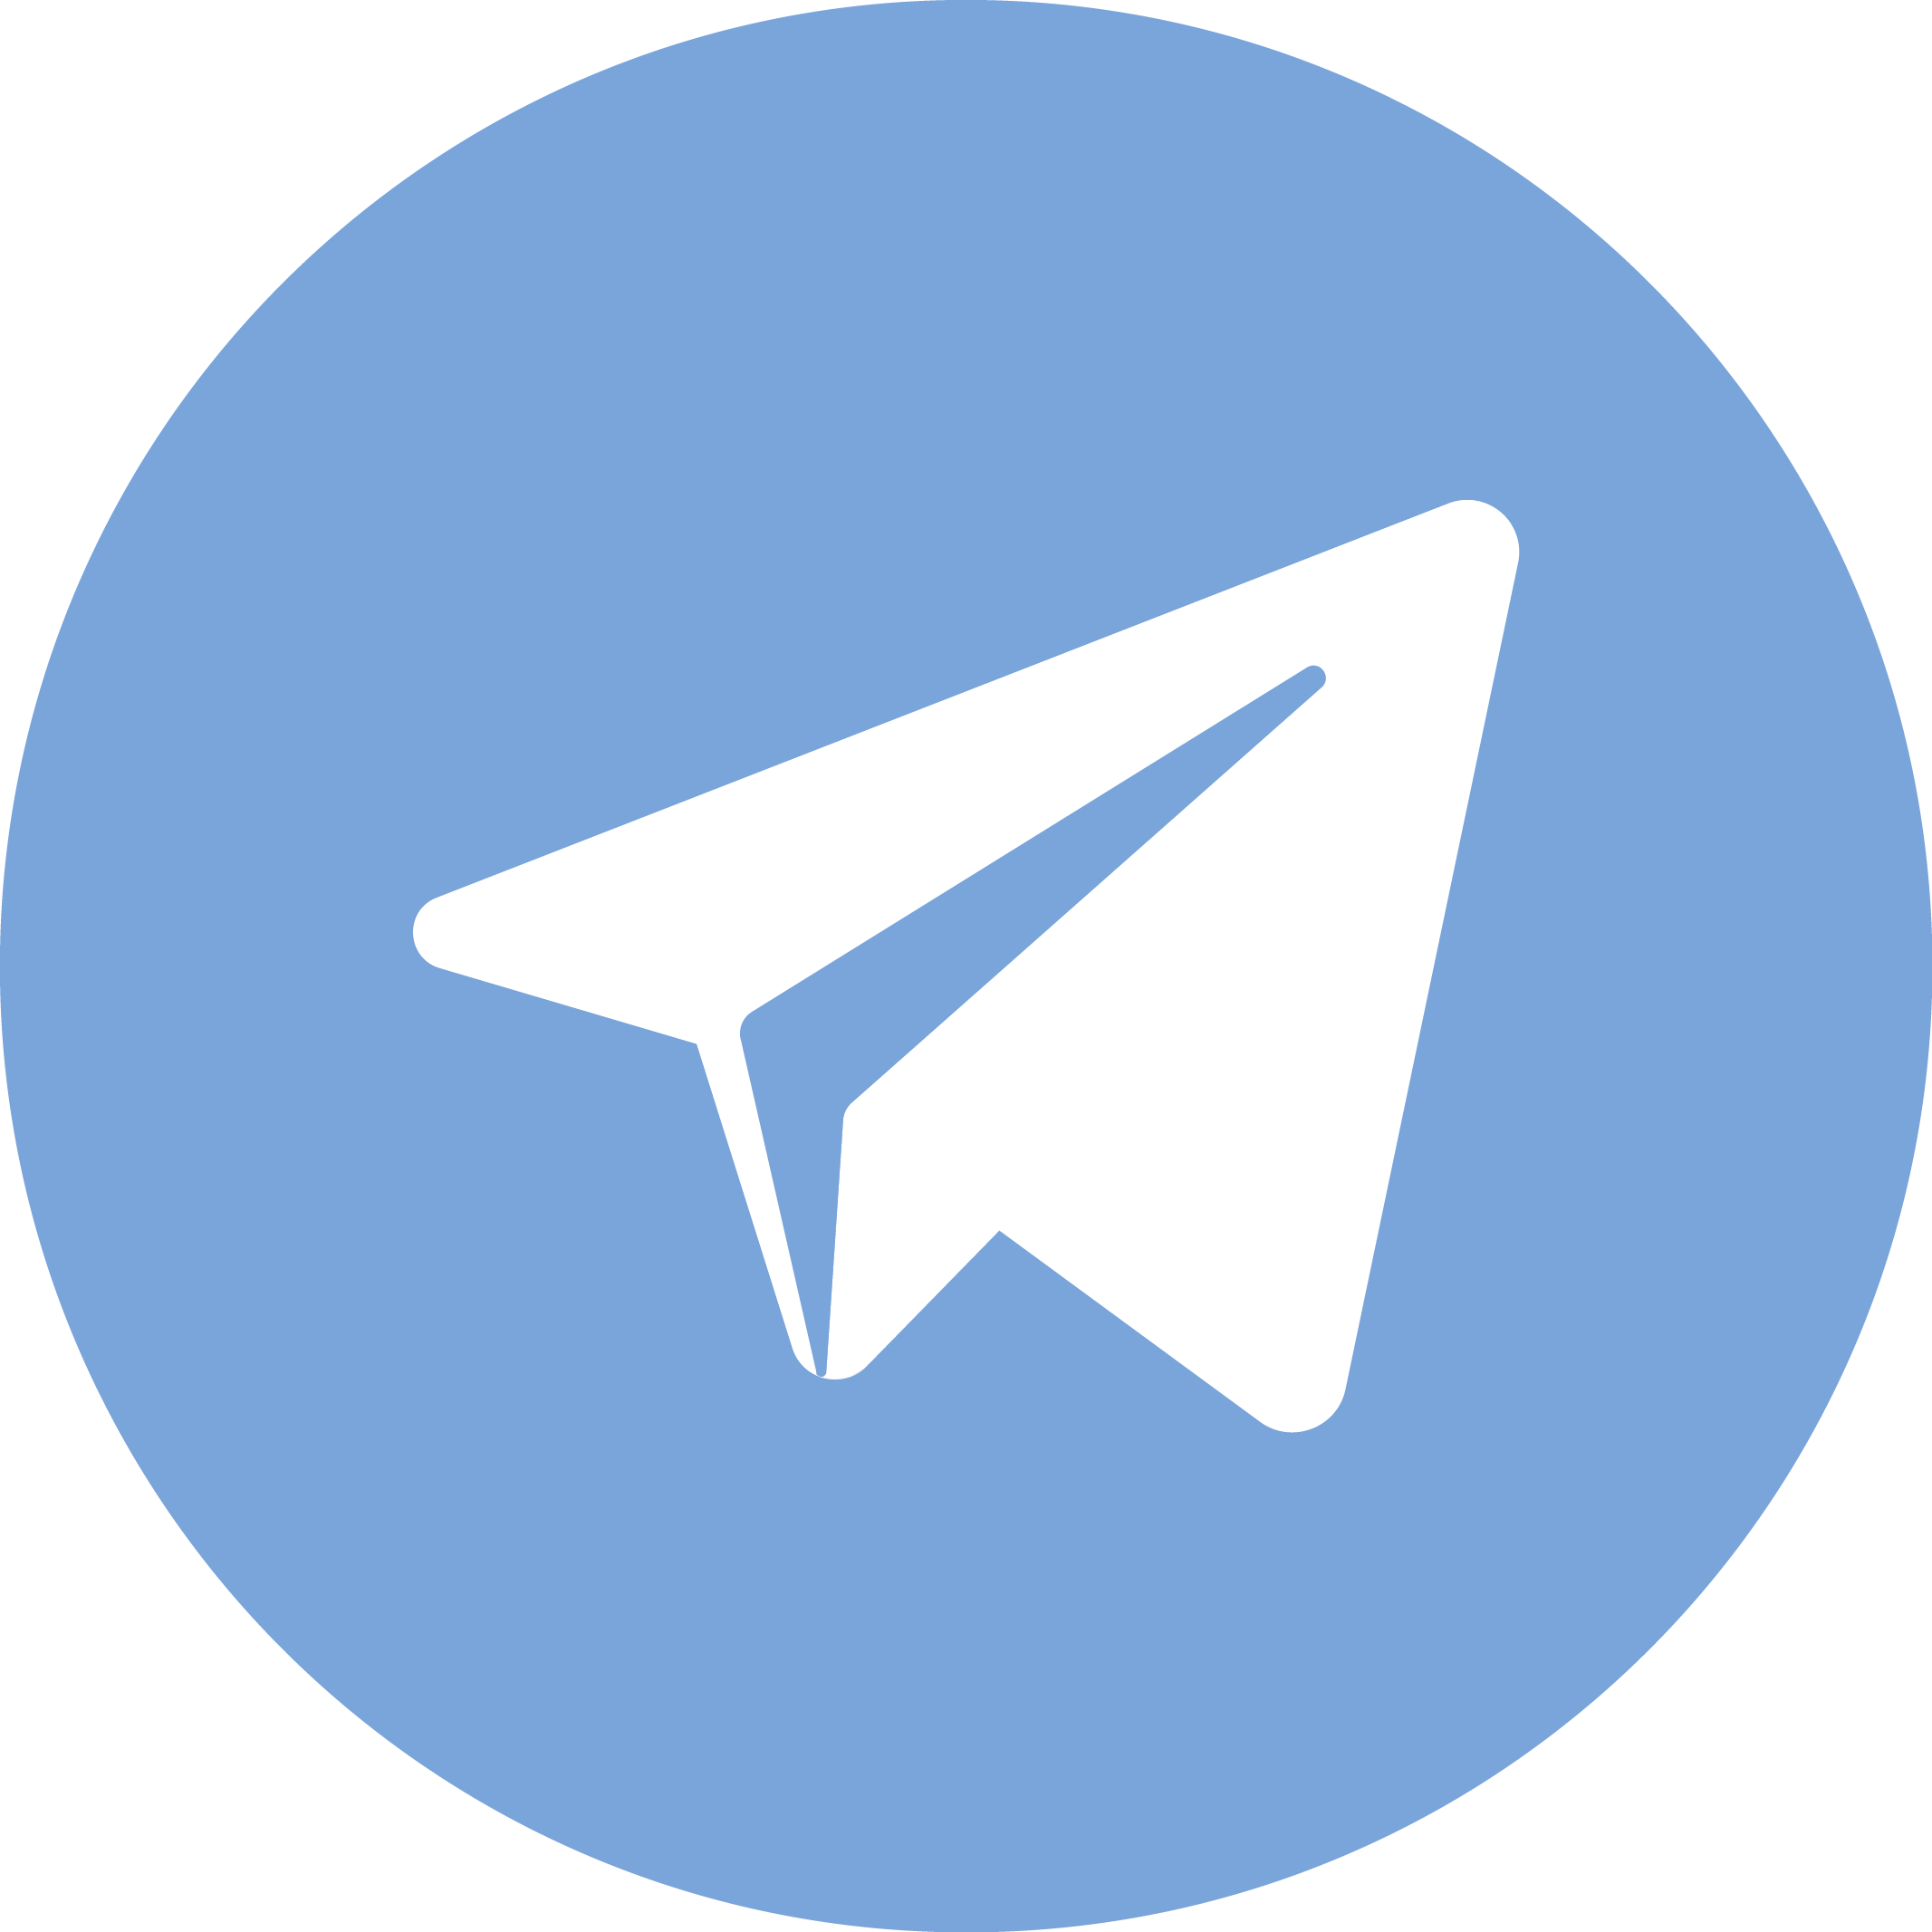 free download telegram for mac